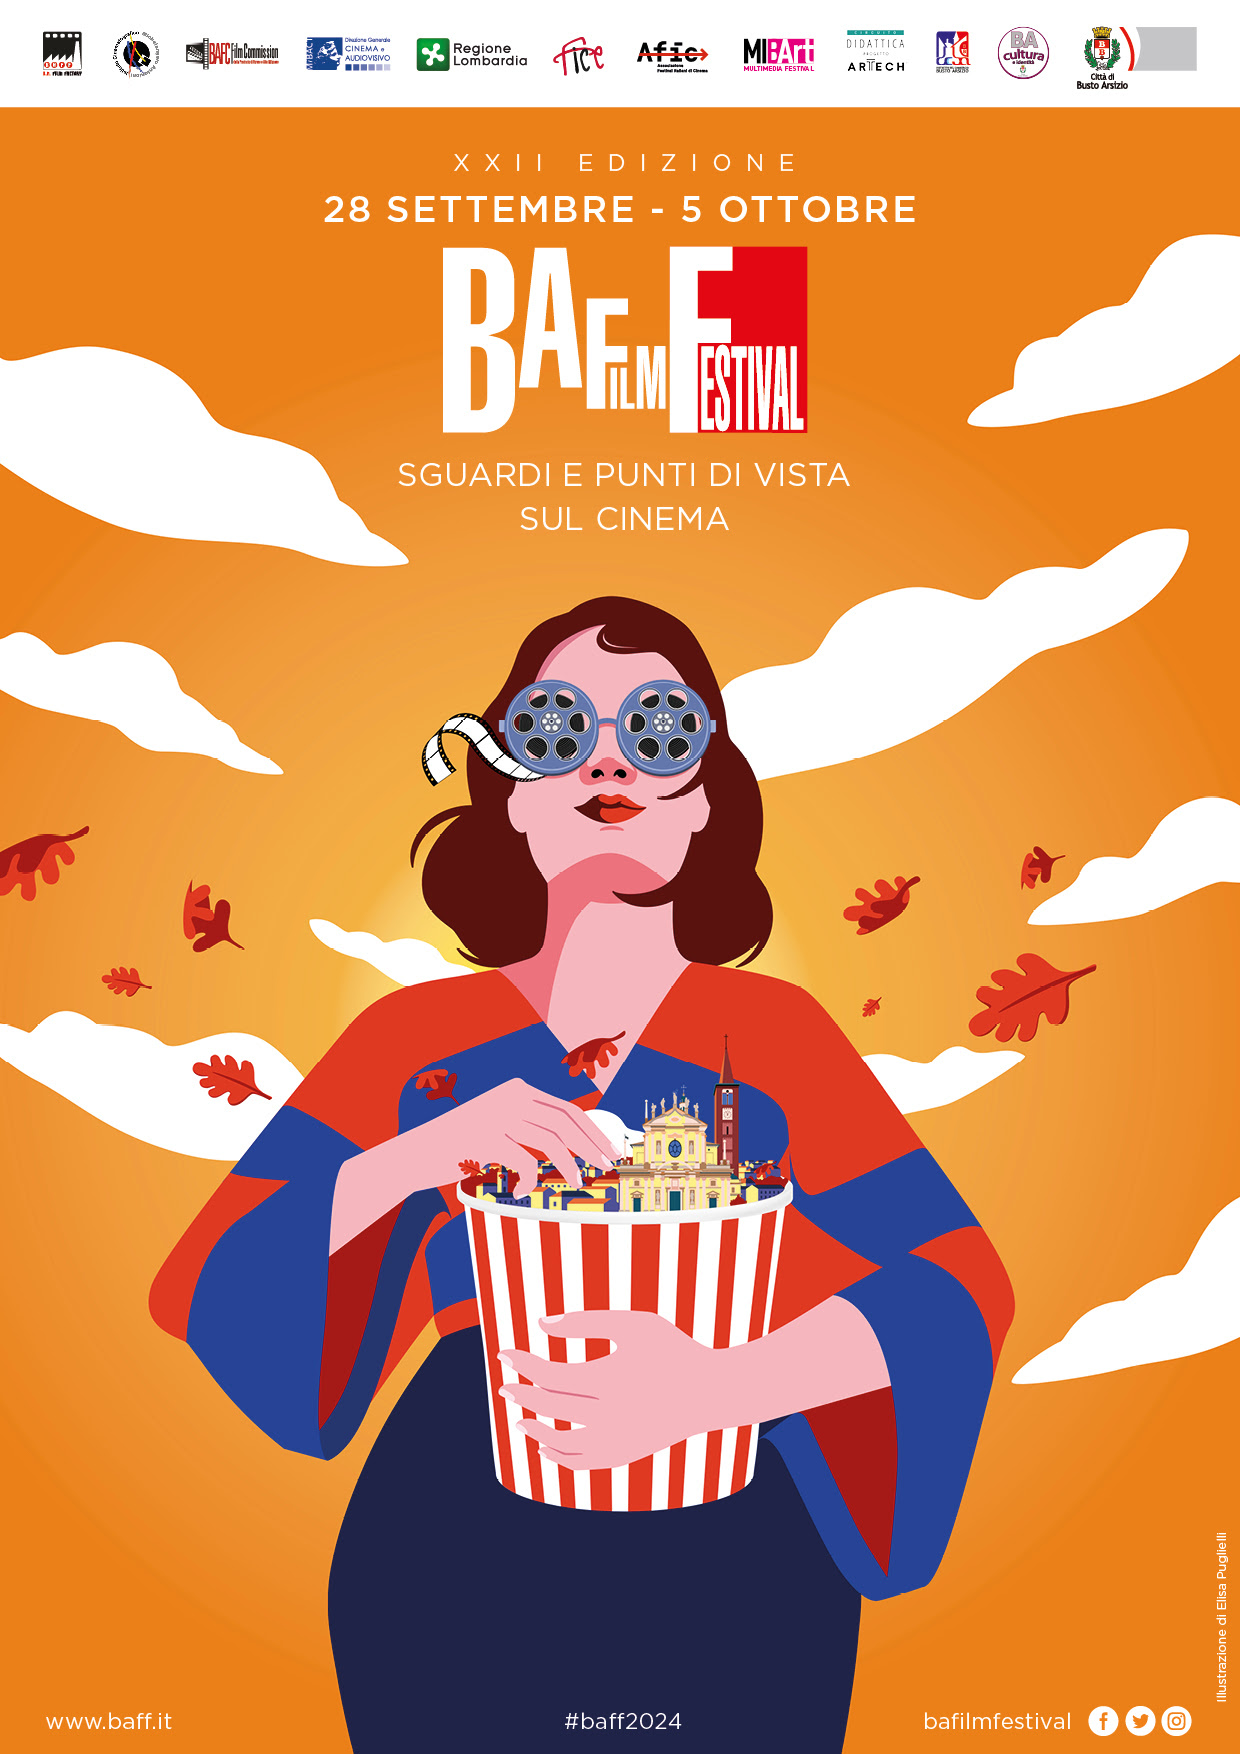 Baff Film Festival: al via il bando della XXII edizione, dal 28/09 al 21/10 a Busto Arsizio